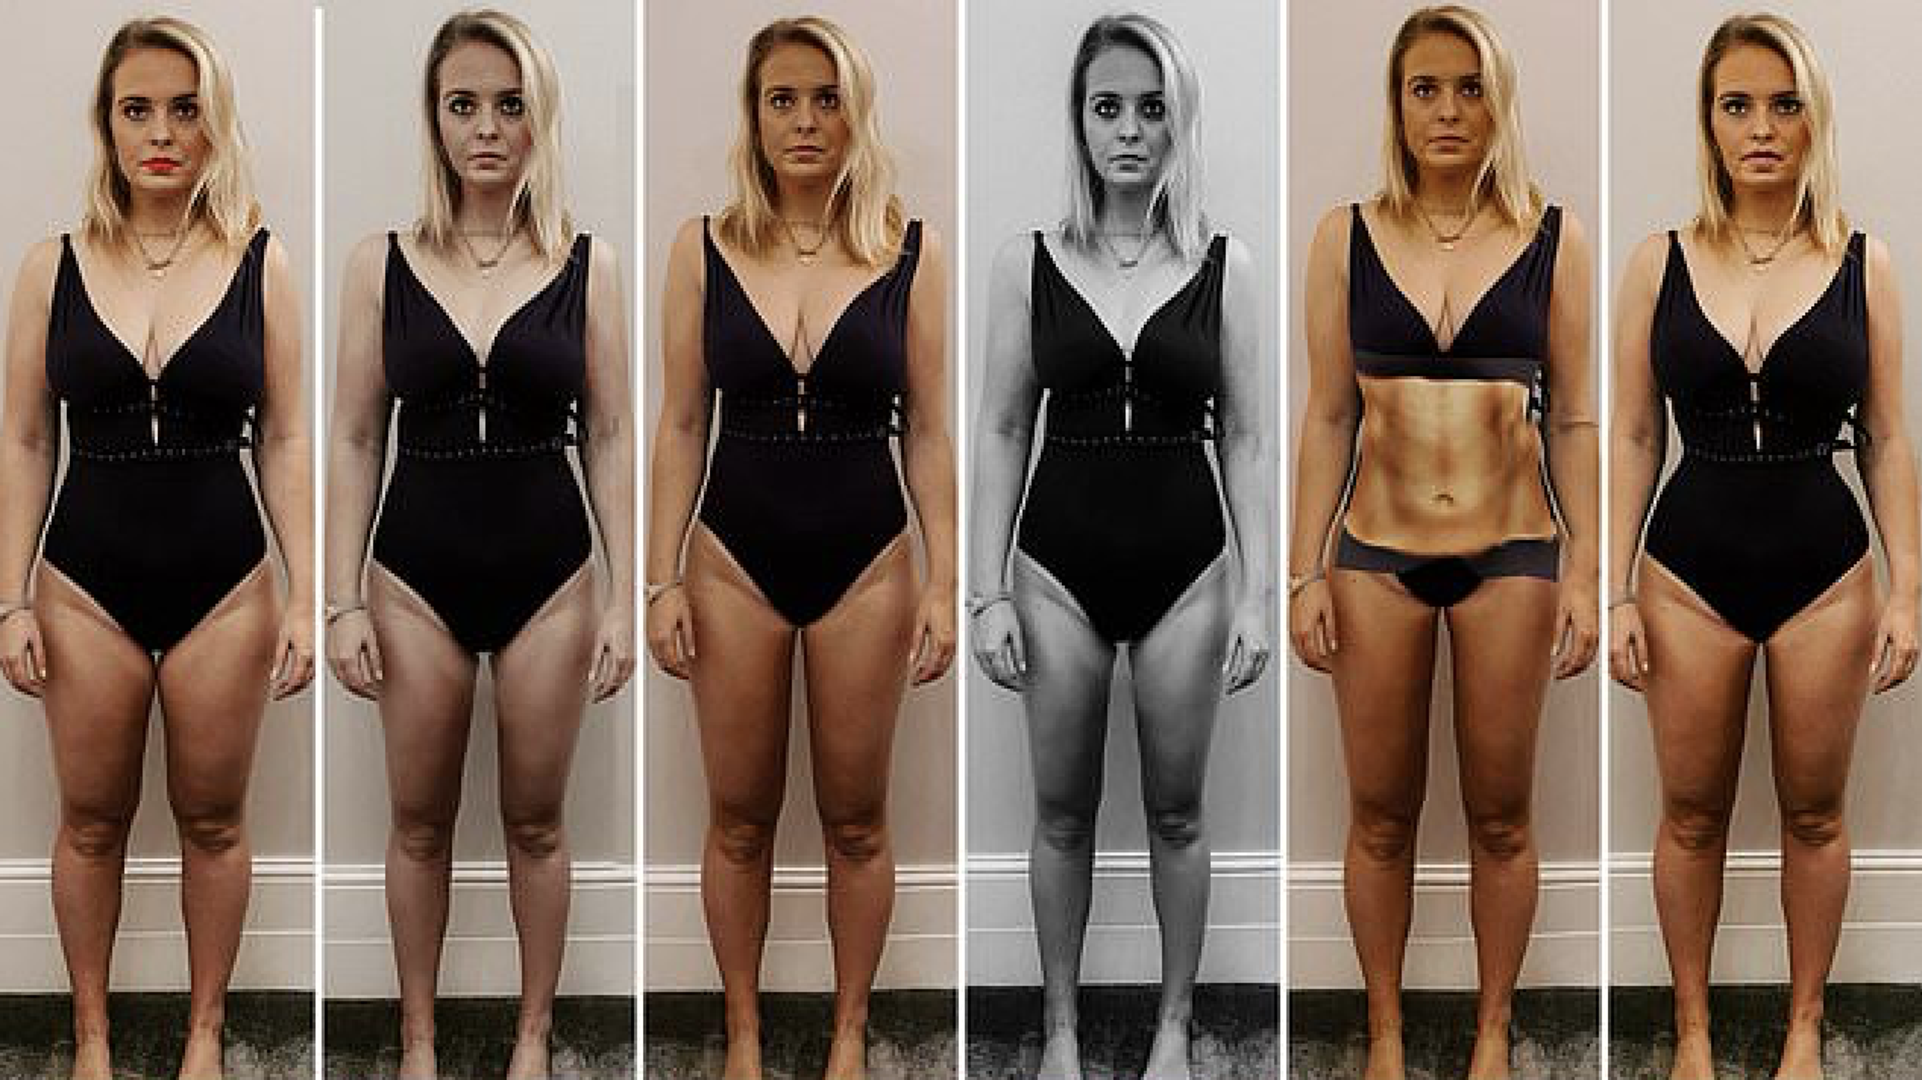 Alex Light,31, pomoću aplikacije Facetune mijenjala je svoje tijelo prema standardima savršenog izgleda tijekom desetljeća.